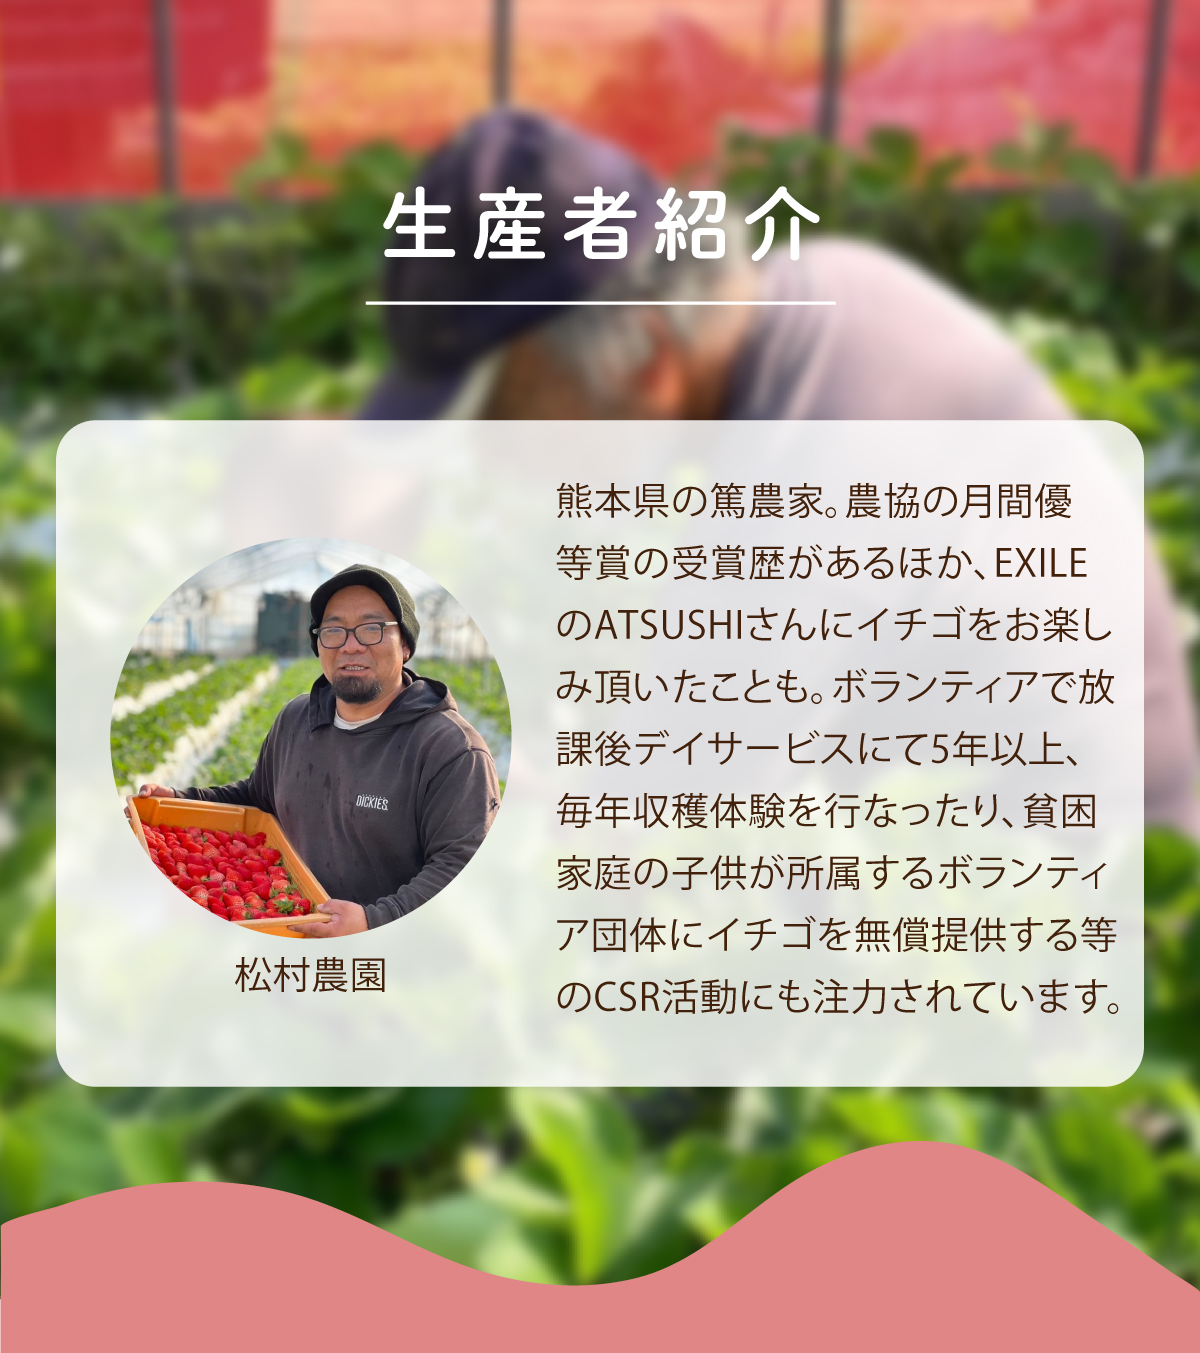 生産者紹介 松村農園 熊本県の篤農家。農協の月間優等賞の受賞歴があるほか、EXILEのATSUSHIさんにイチゴをお楽しみ頂いたことも。ボランティアで放課後デイサービスにて5年以上、毎年収穫体験を行ったり、貧困家庭の子供が所属するボランティア団体にイチゴを無償提供する等のCSR活動にも注力されています。